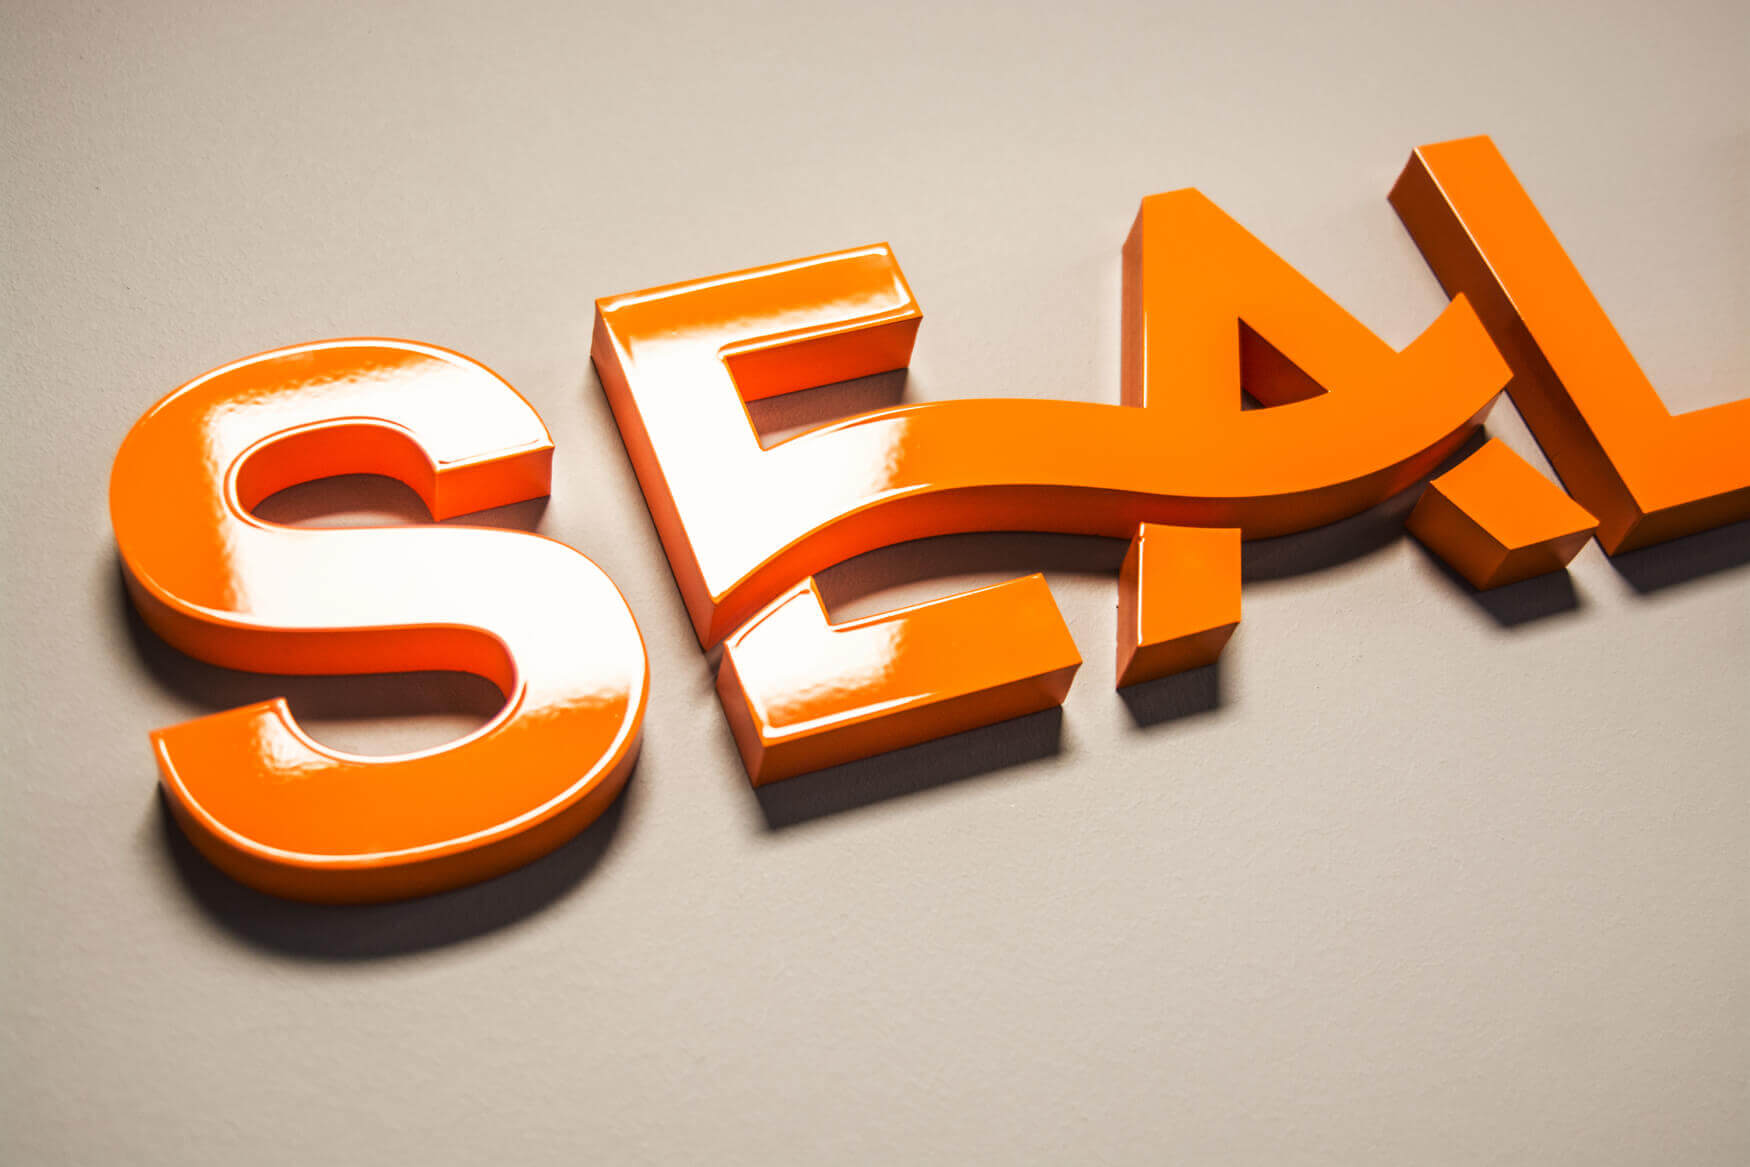 Sealand - Sealand - lettere in 3D dipinte a spruzzo sul muro